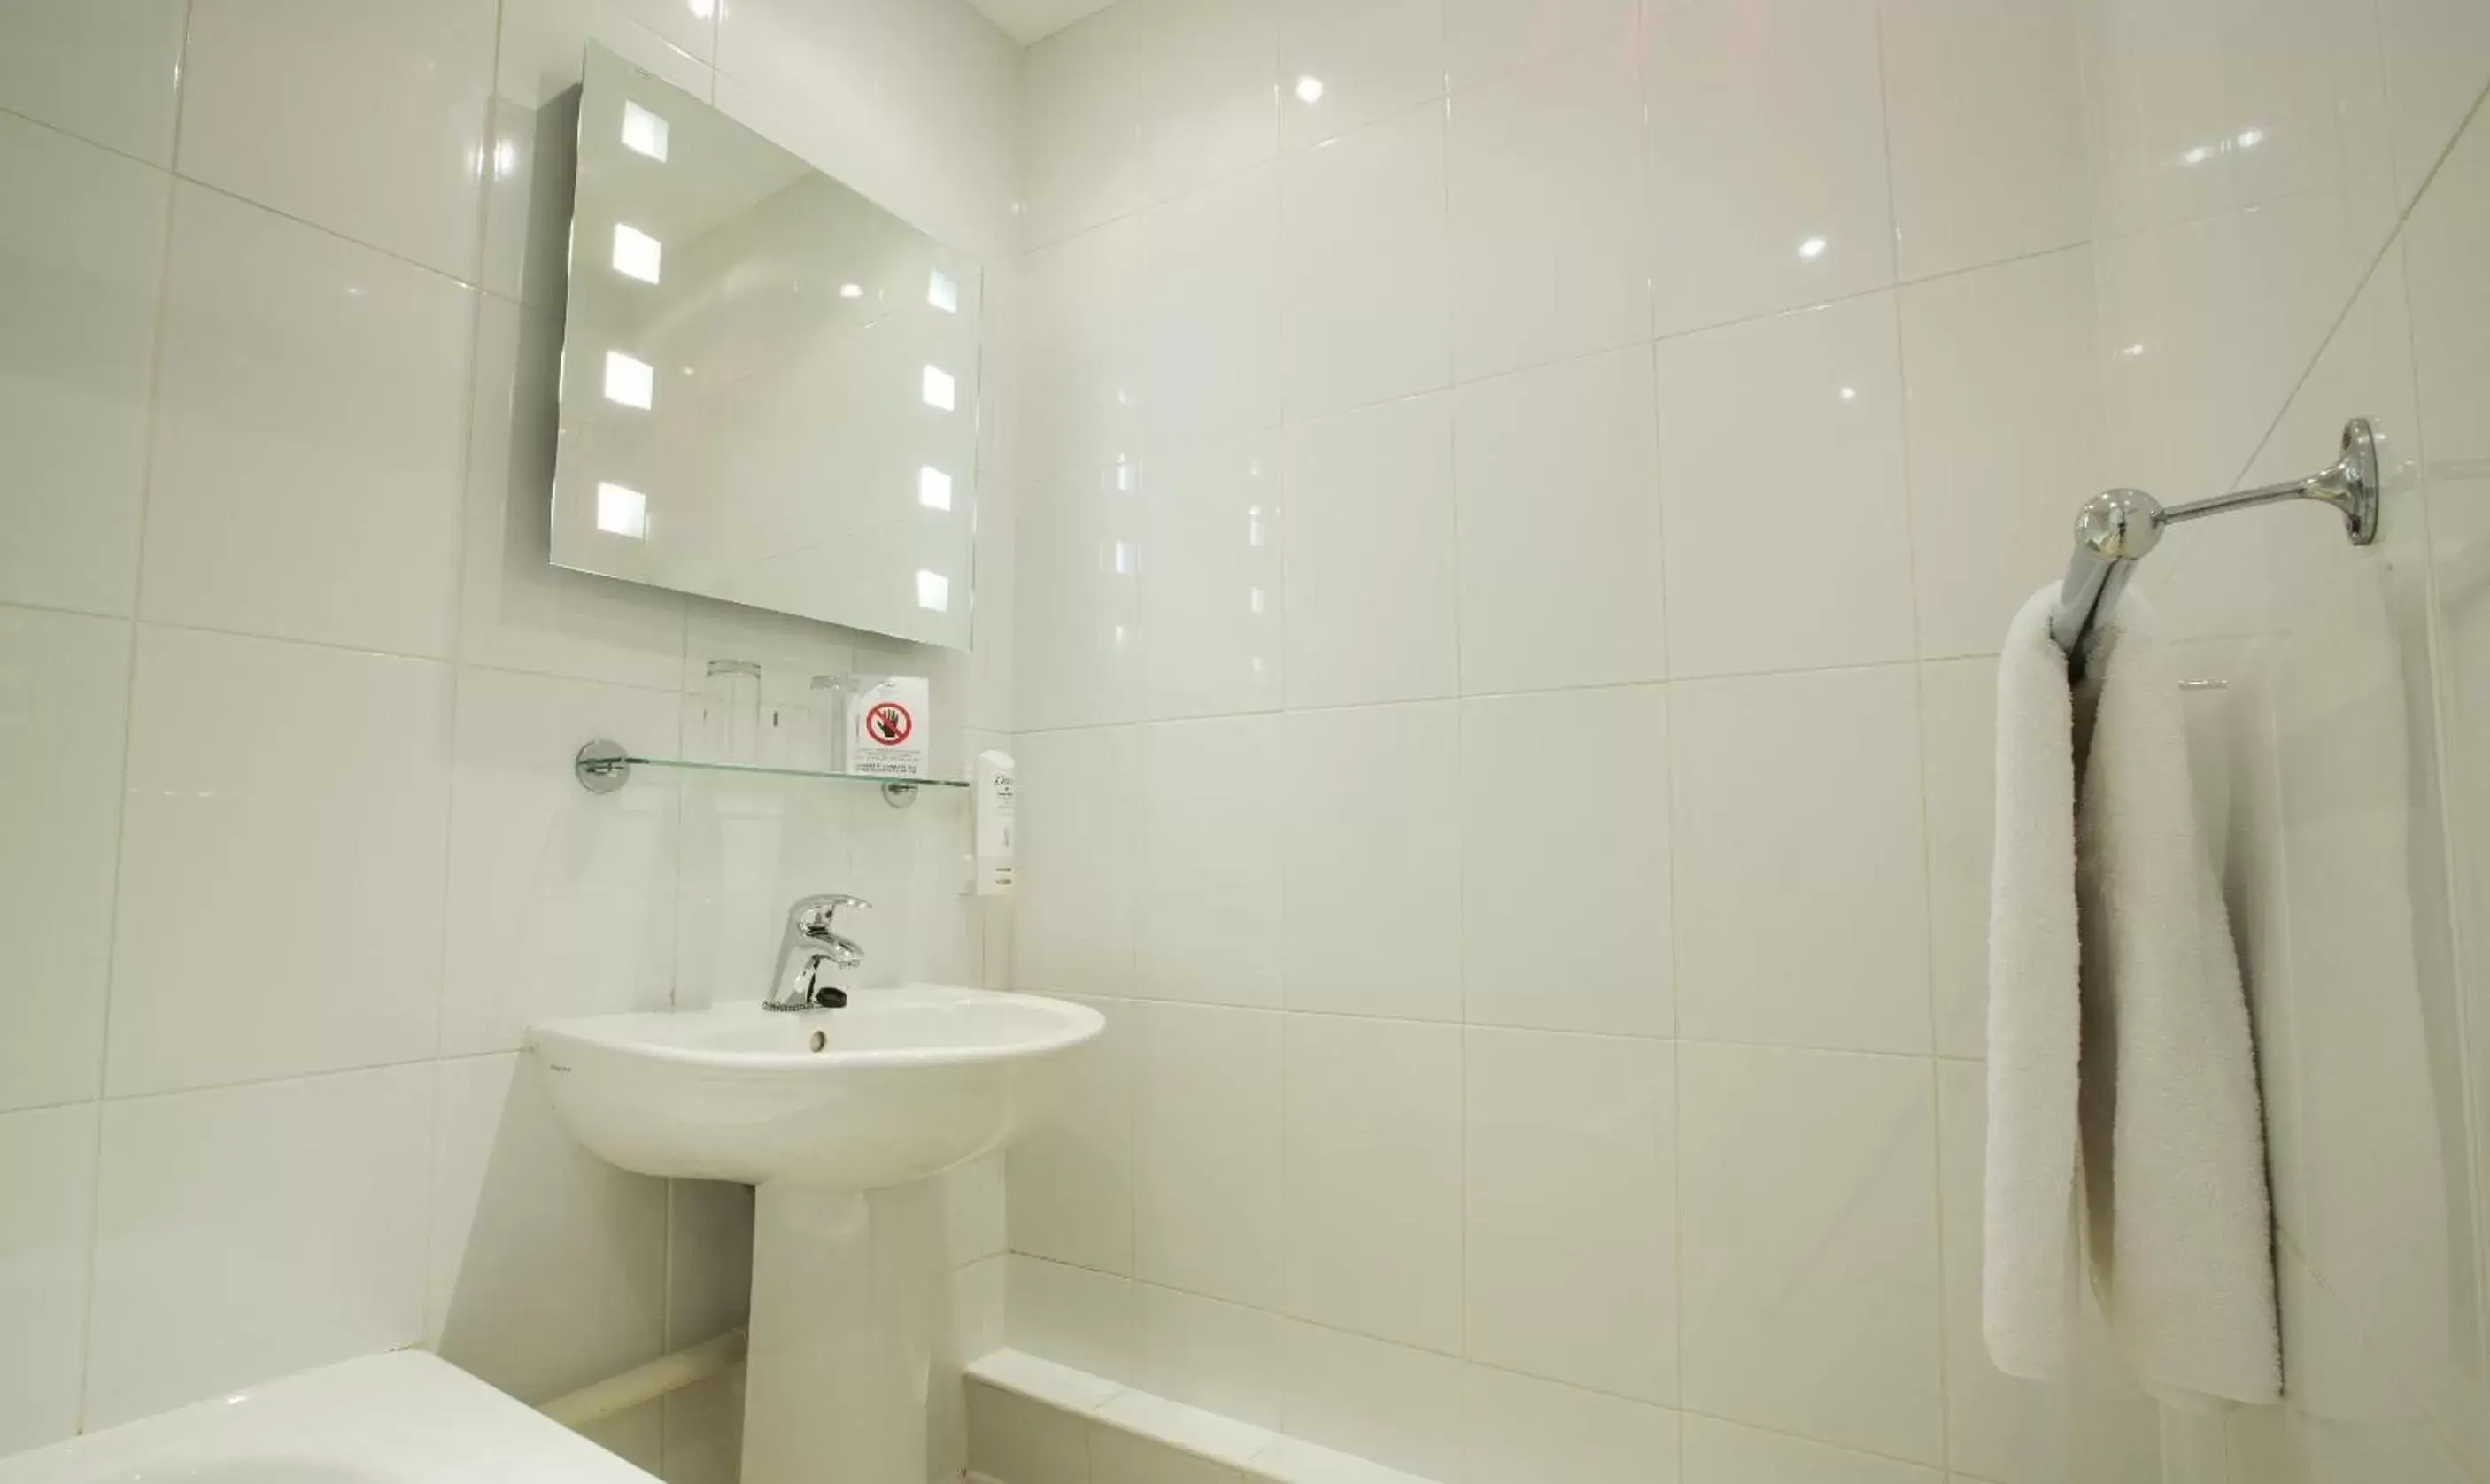 Bathroom in Normandy Hotel (Near Glasgow Airport)